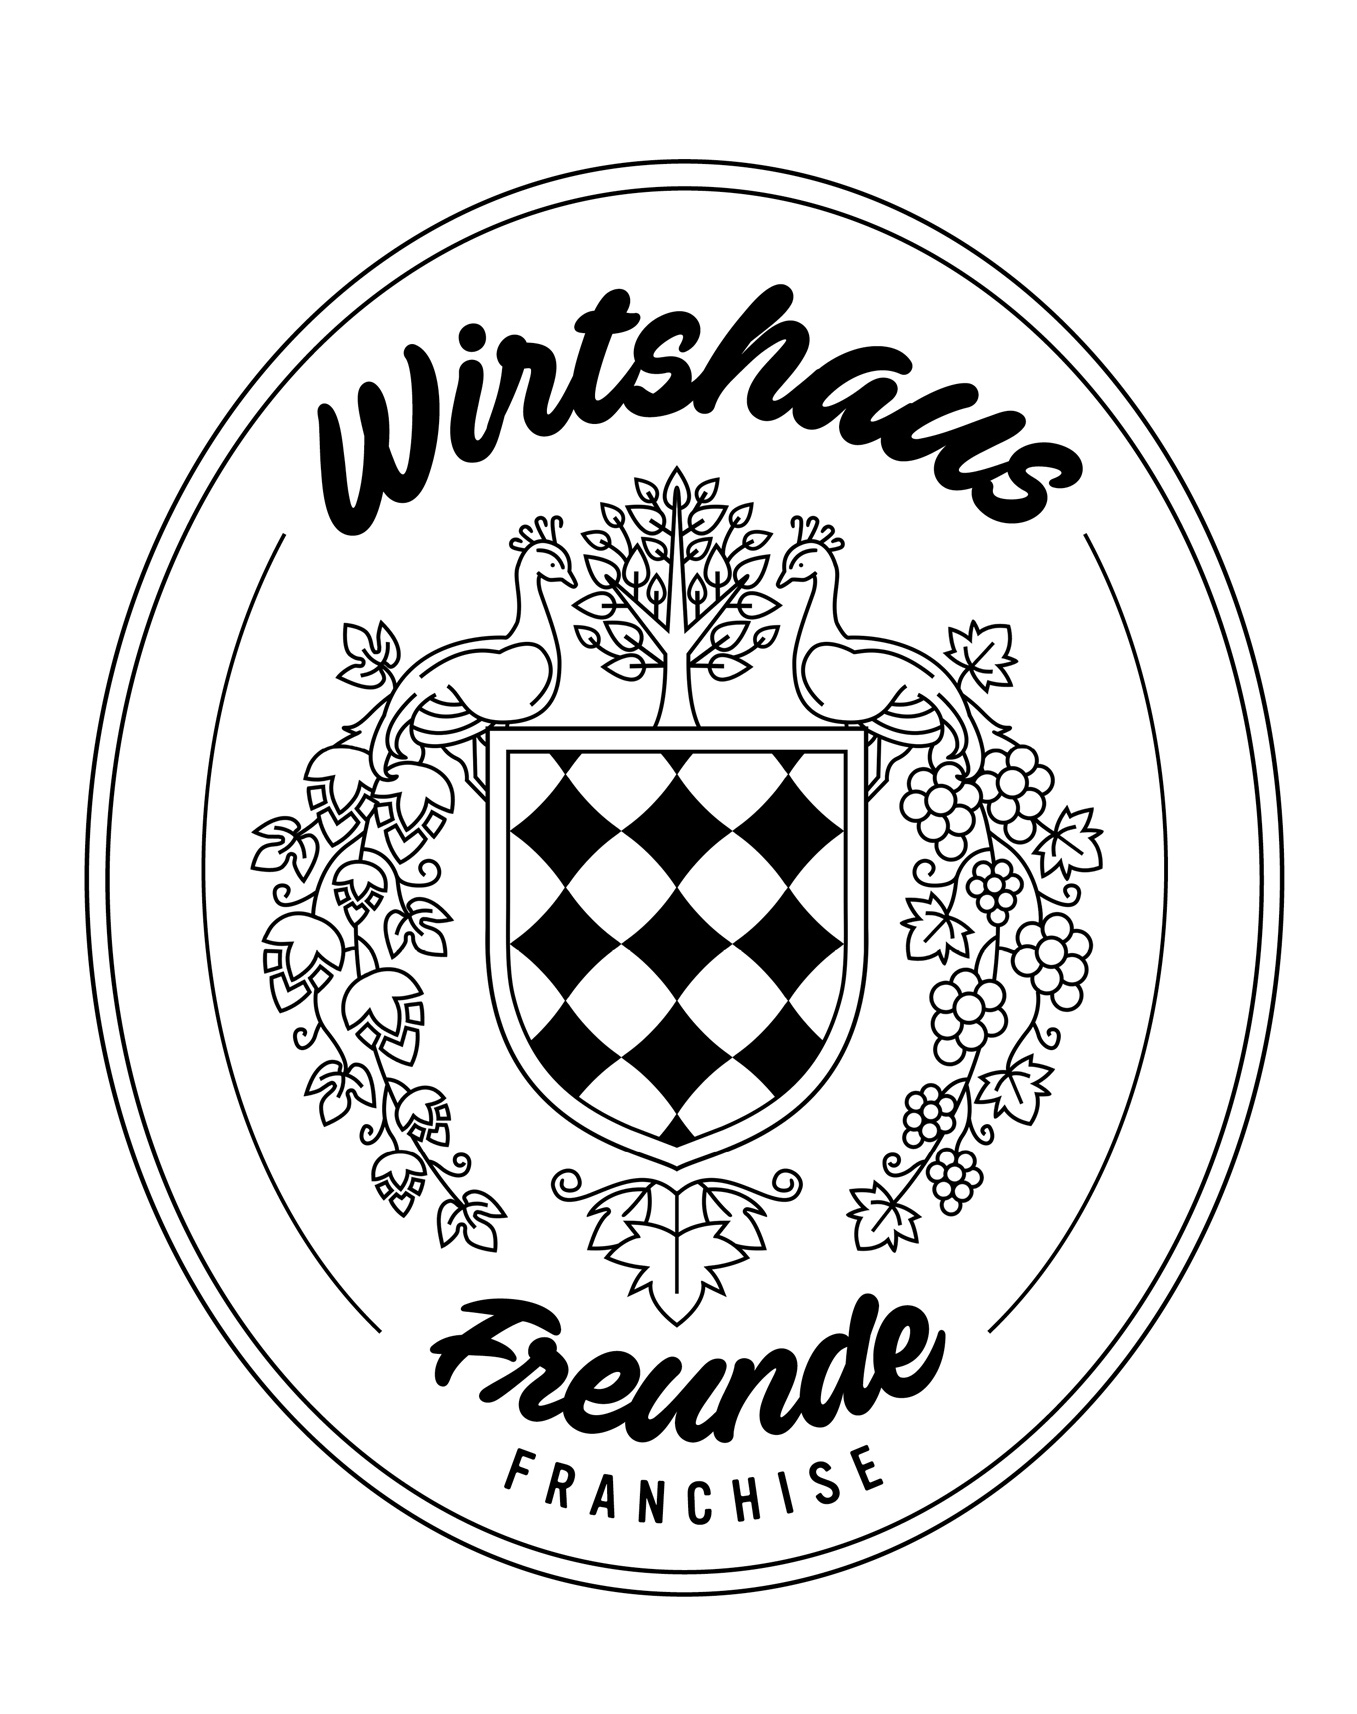 Wirtshaus Freunde Franchise Logo